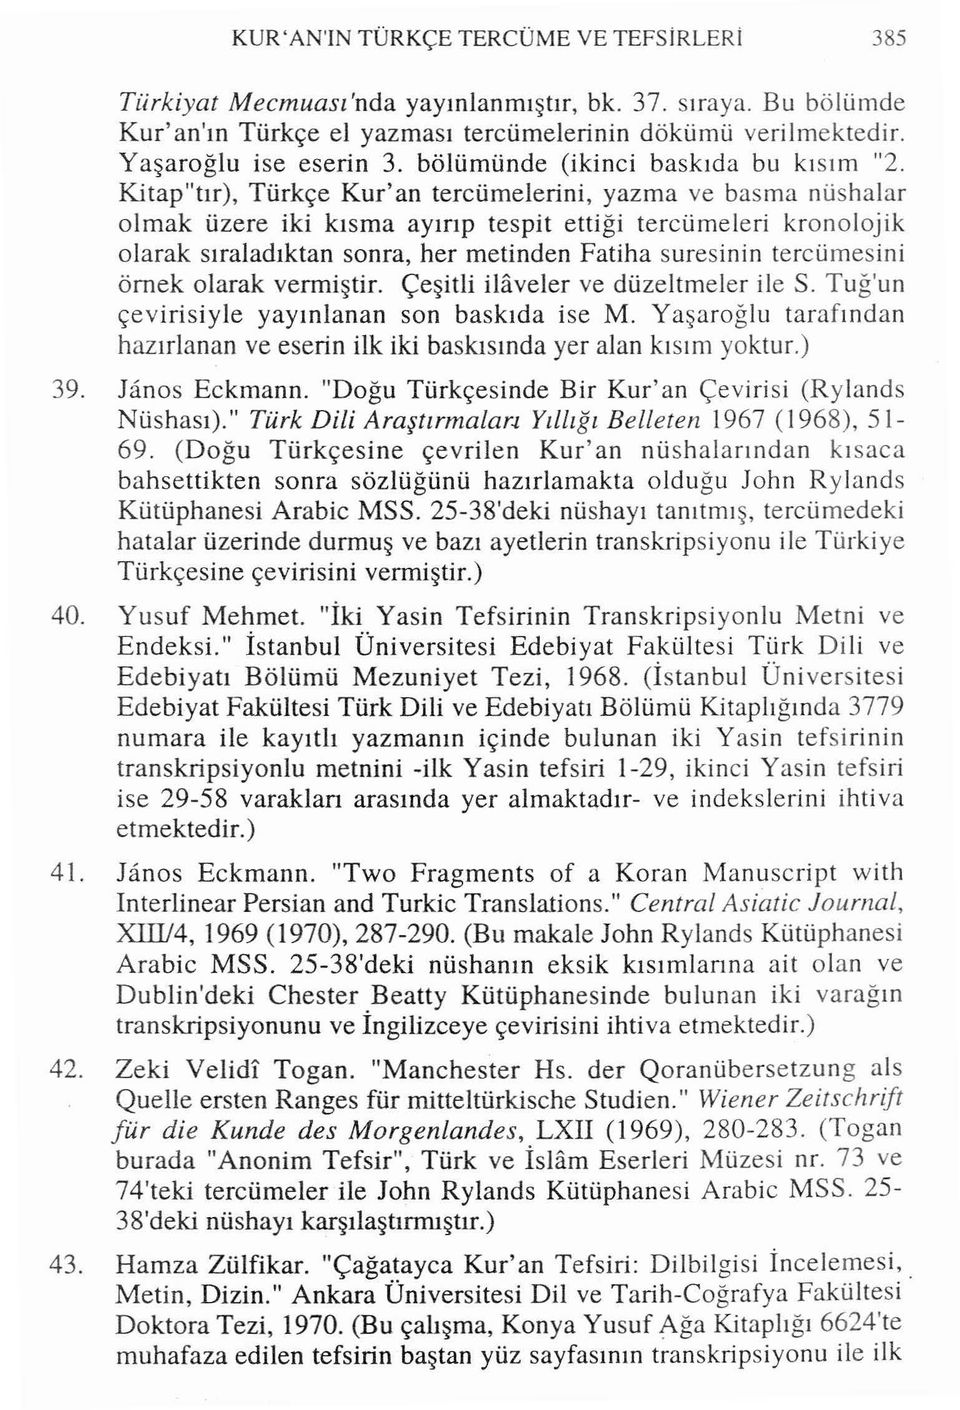 Kitap"tır), Türkçe Kur'an tercümelerini, yazma ve basma nüshalar olmak üzere iki kısma ayırıp tespit ettiği tercümeleri kronolojik olarak sıraladıktan sonra, her metinden Fatiha suresinin tercümesini